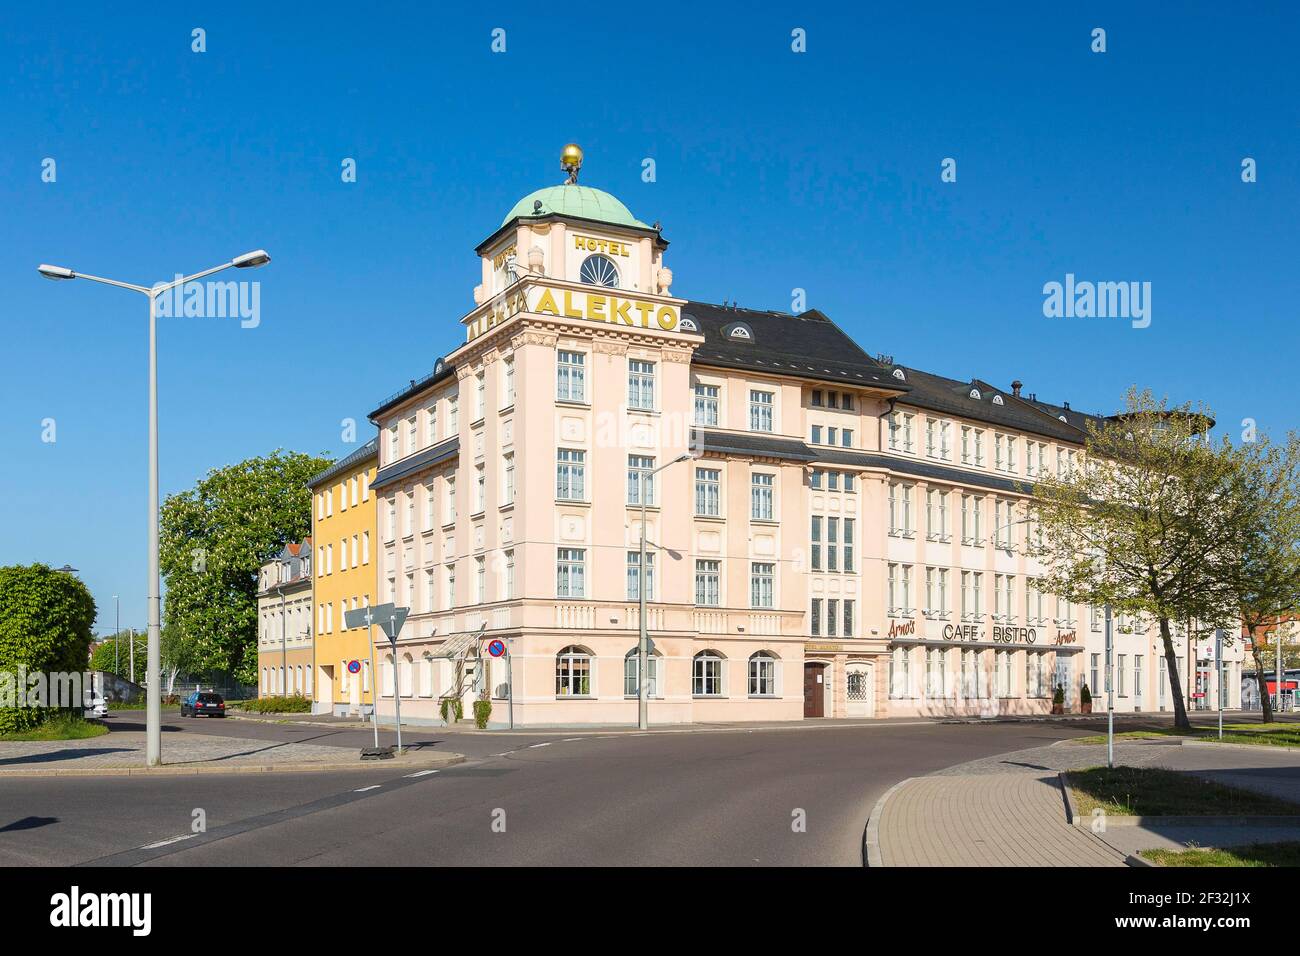 Hotel Alekto, Freiberg, Saxony, Germany Stock Photo